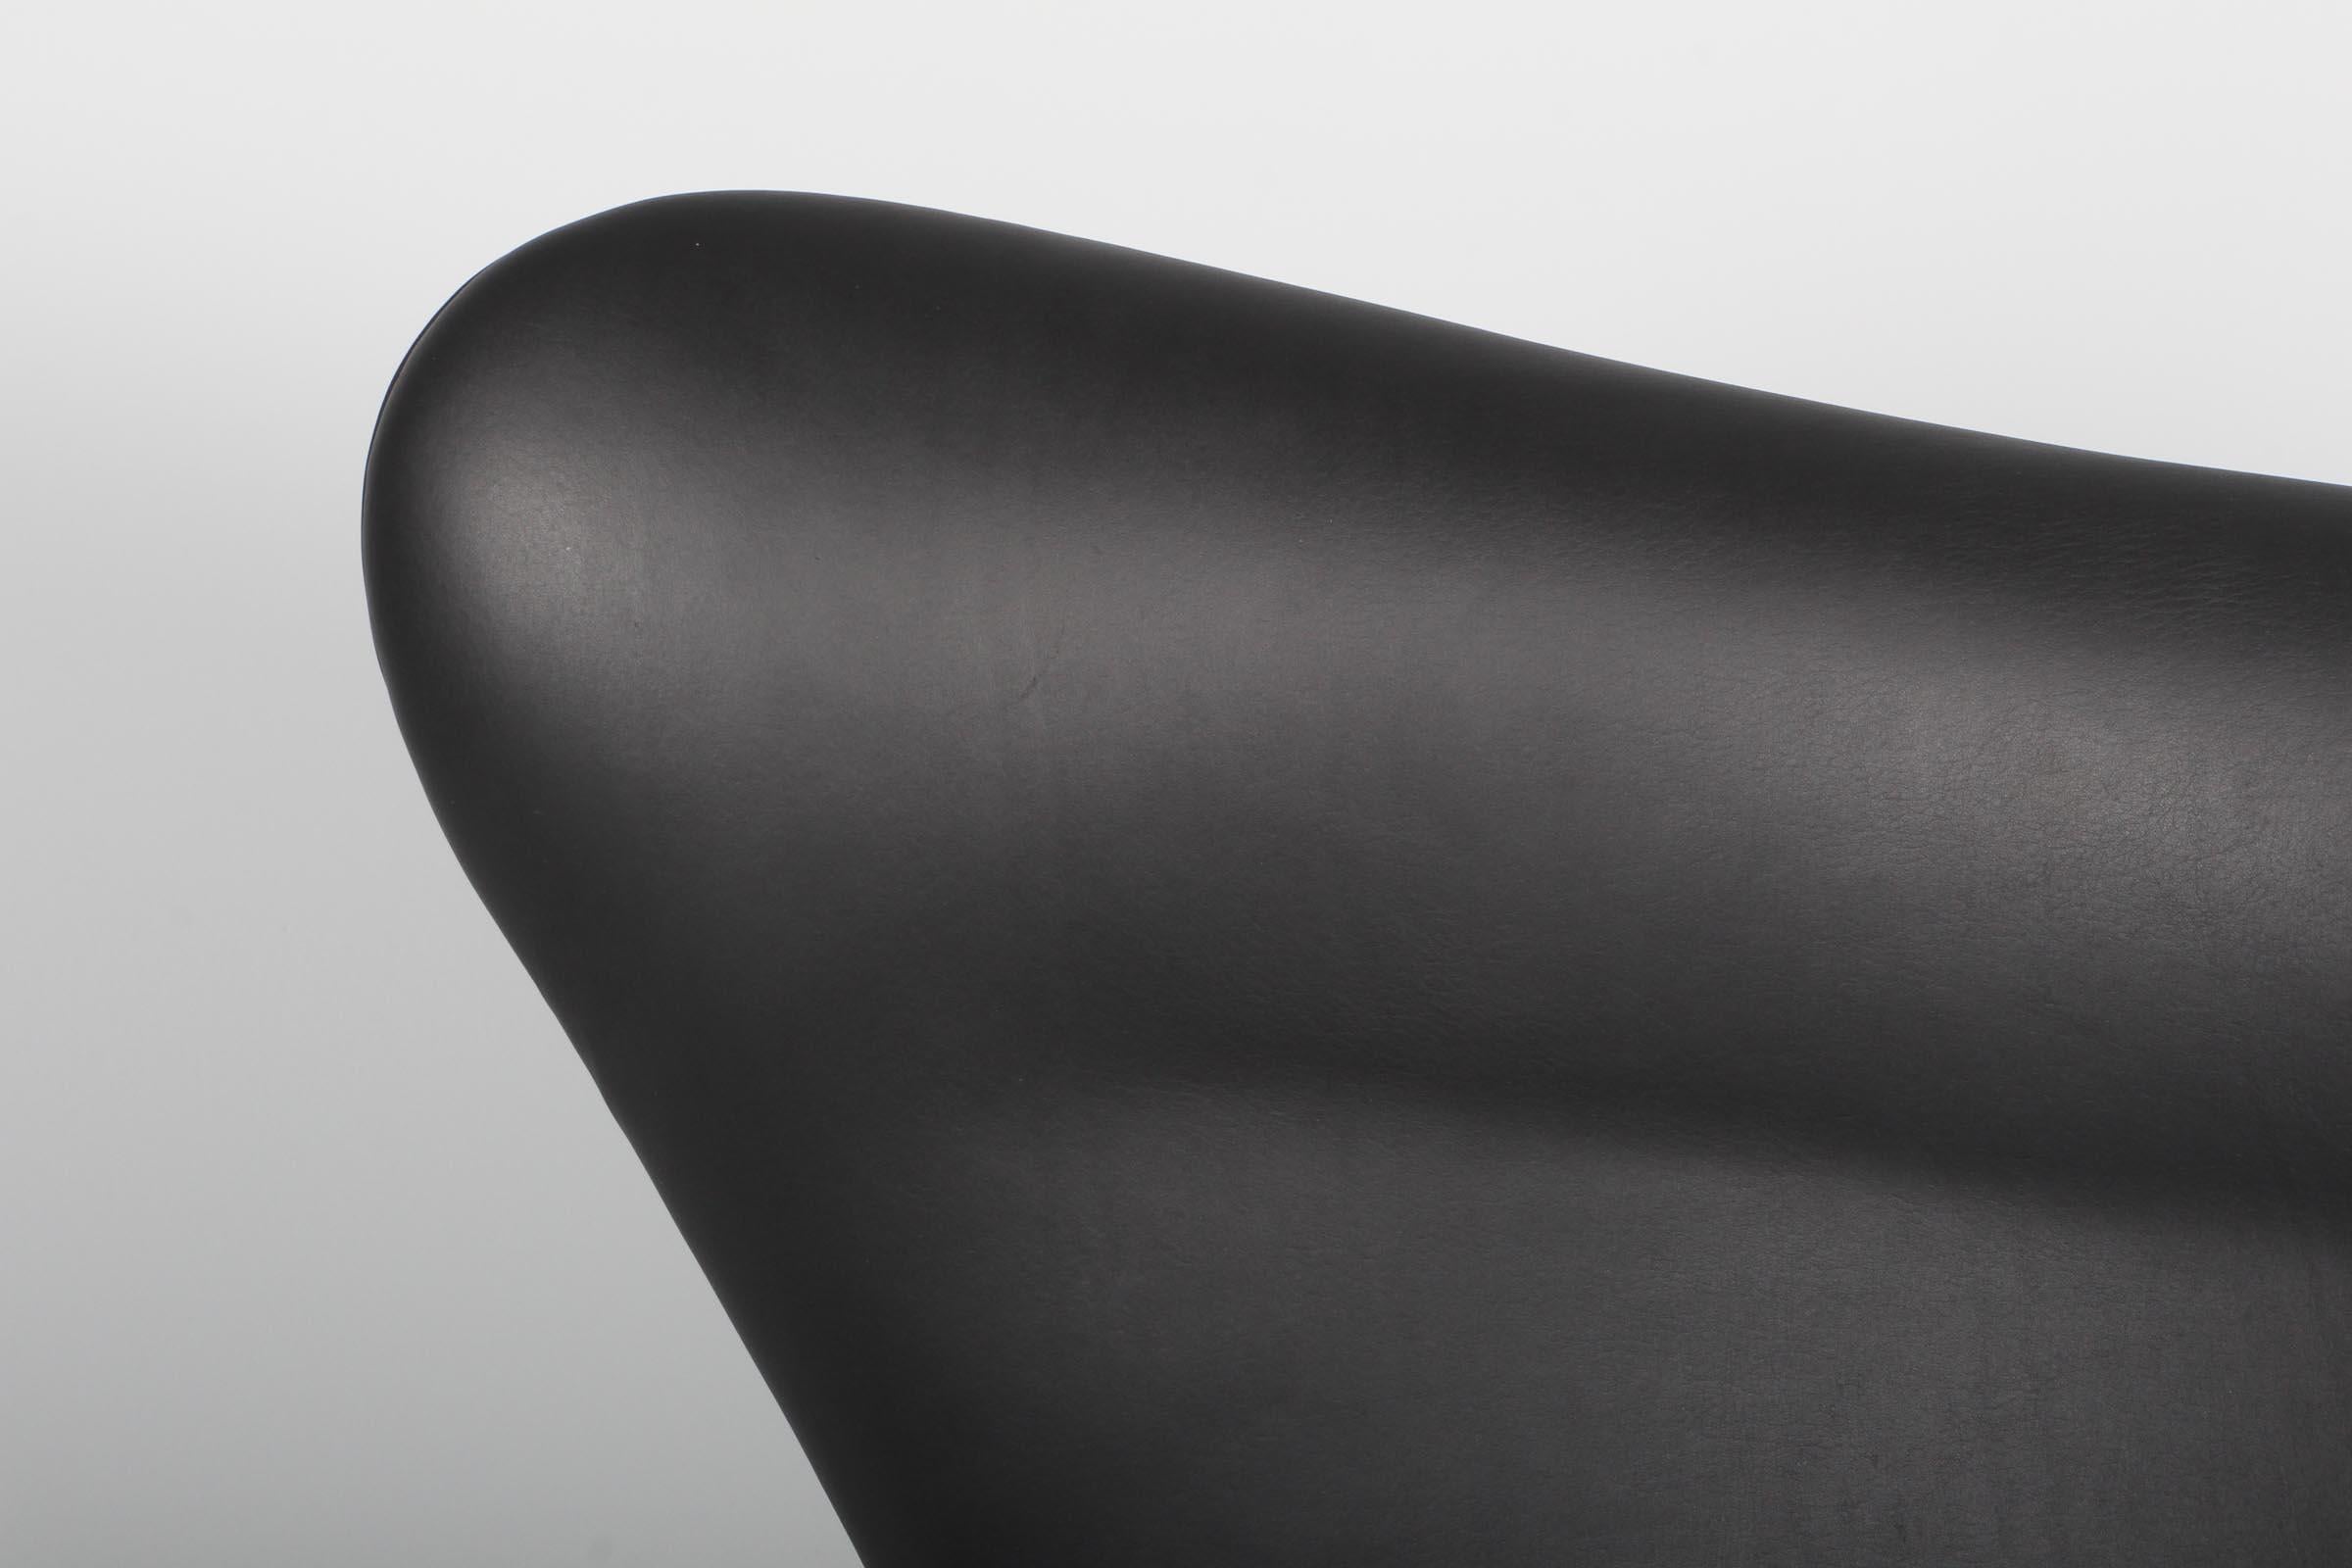 Neu Arne Jacobsen Satz von Sesseln Modell Egg. Neu gepolstert mit schwarzem Anilinleder Dakar.

Vier-Sterne-Fußkreuz mit Kippfunktion.

Hergestellt von Fritz Hansen.

Dieser ikonische Stuhl ist einer der berühmtesten Stühle der Welt und wird